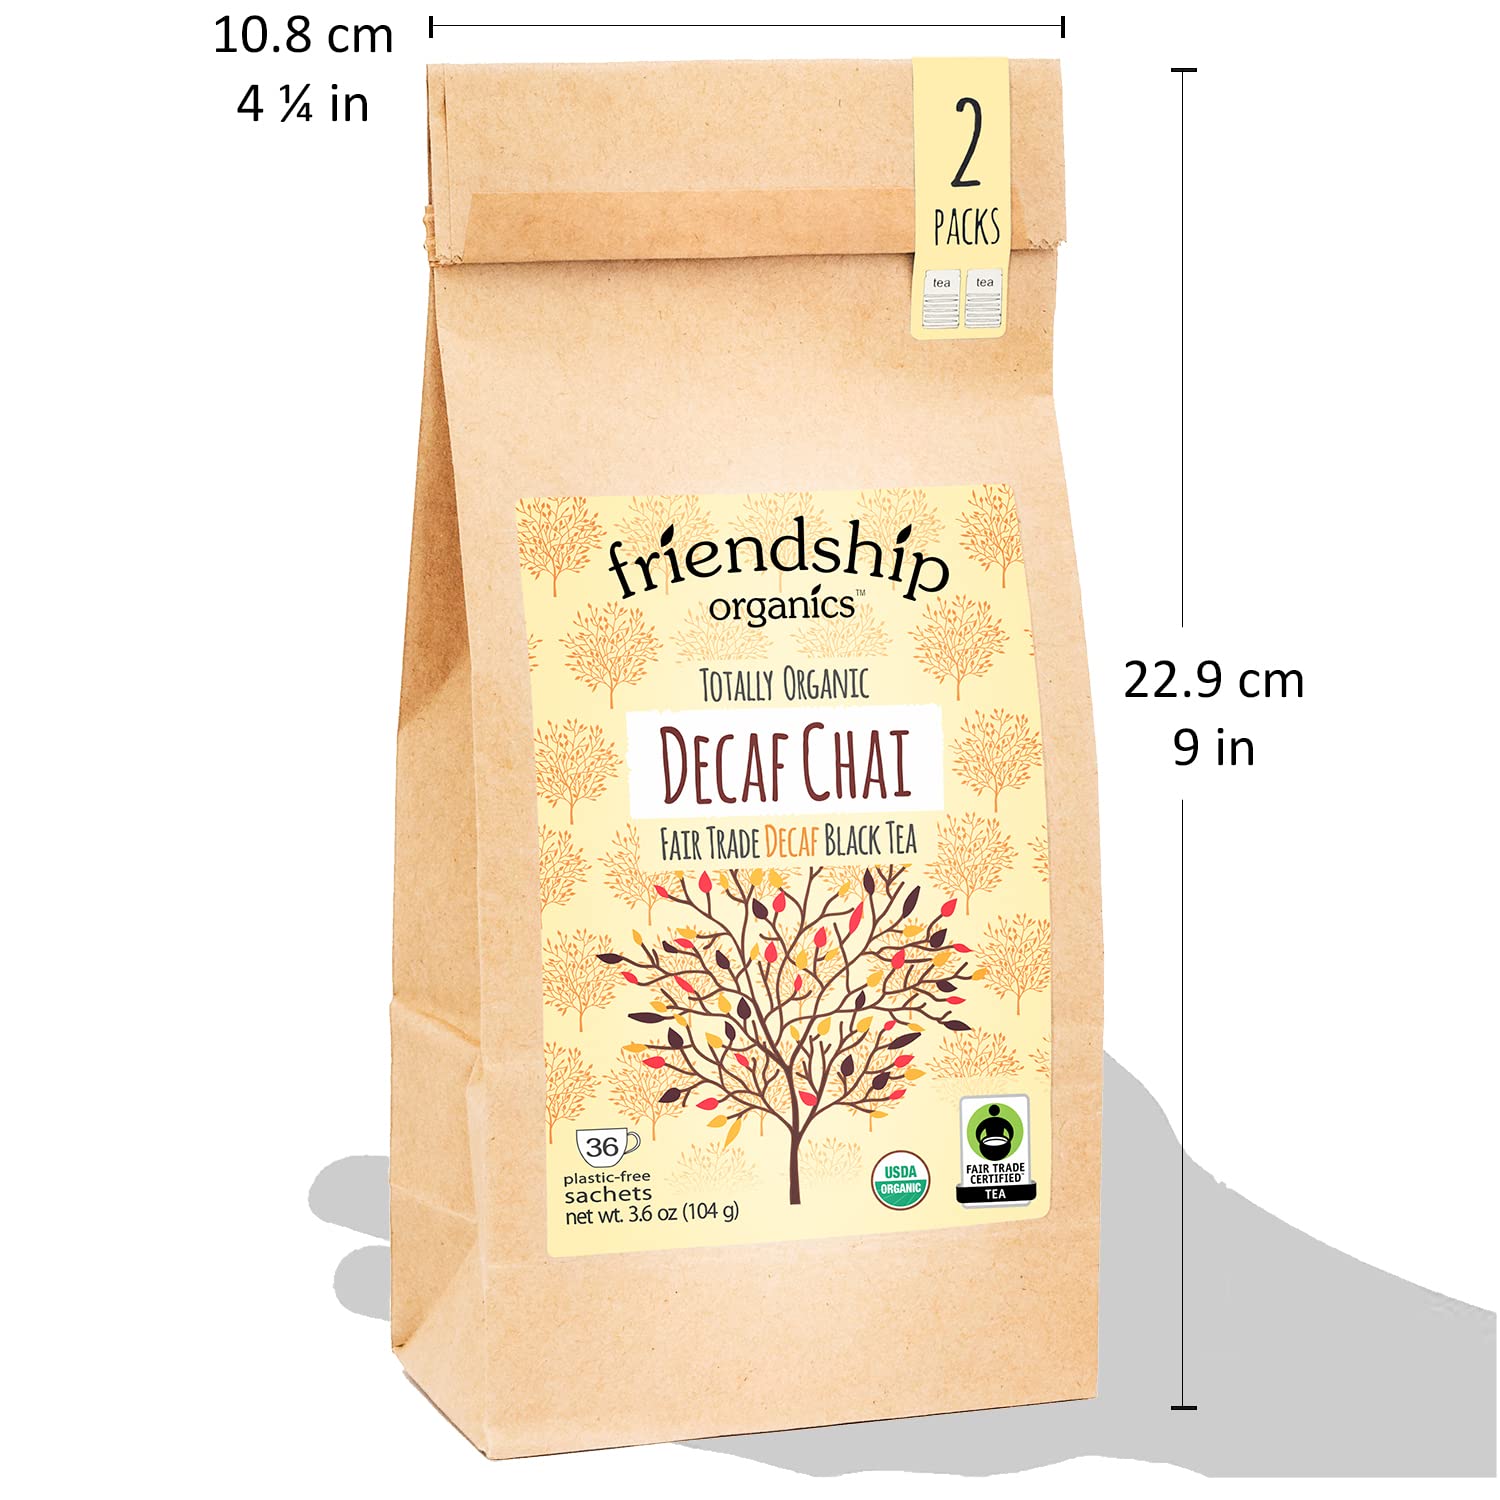 Friendship Organics Decaf Chai Tea Bags, Organic and Fair Trade 36 count